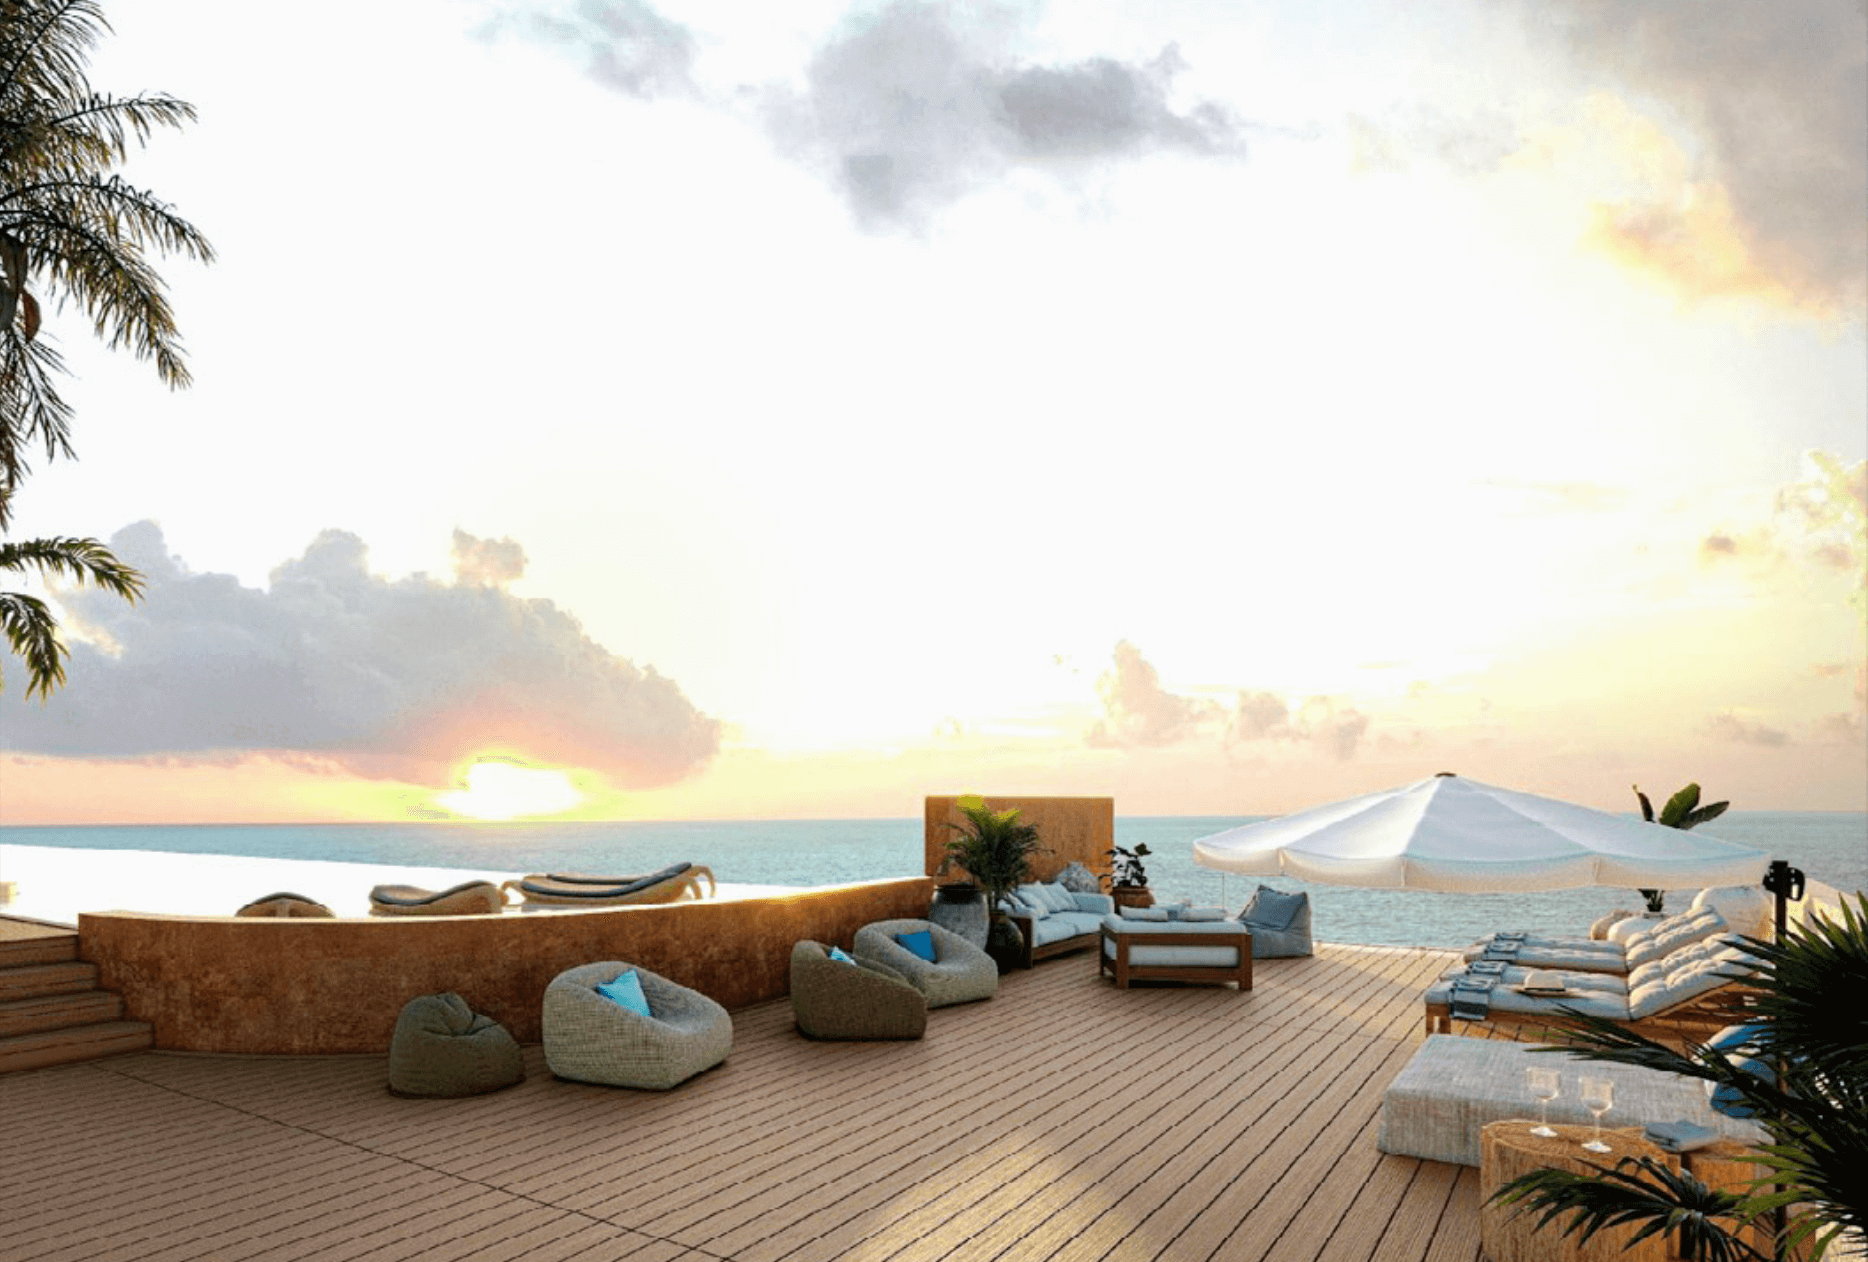 Departamento frente al mar, alberca privada, terraza, lock off, pre-venta Tulum.